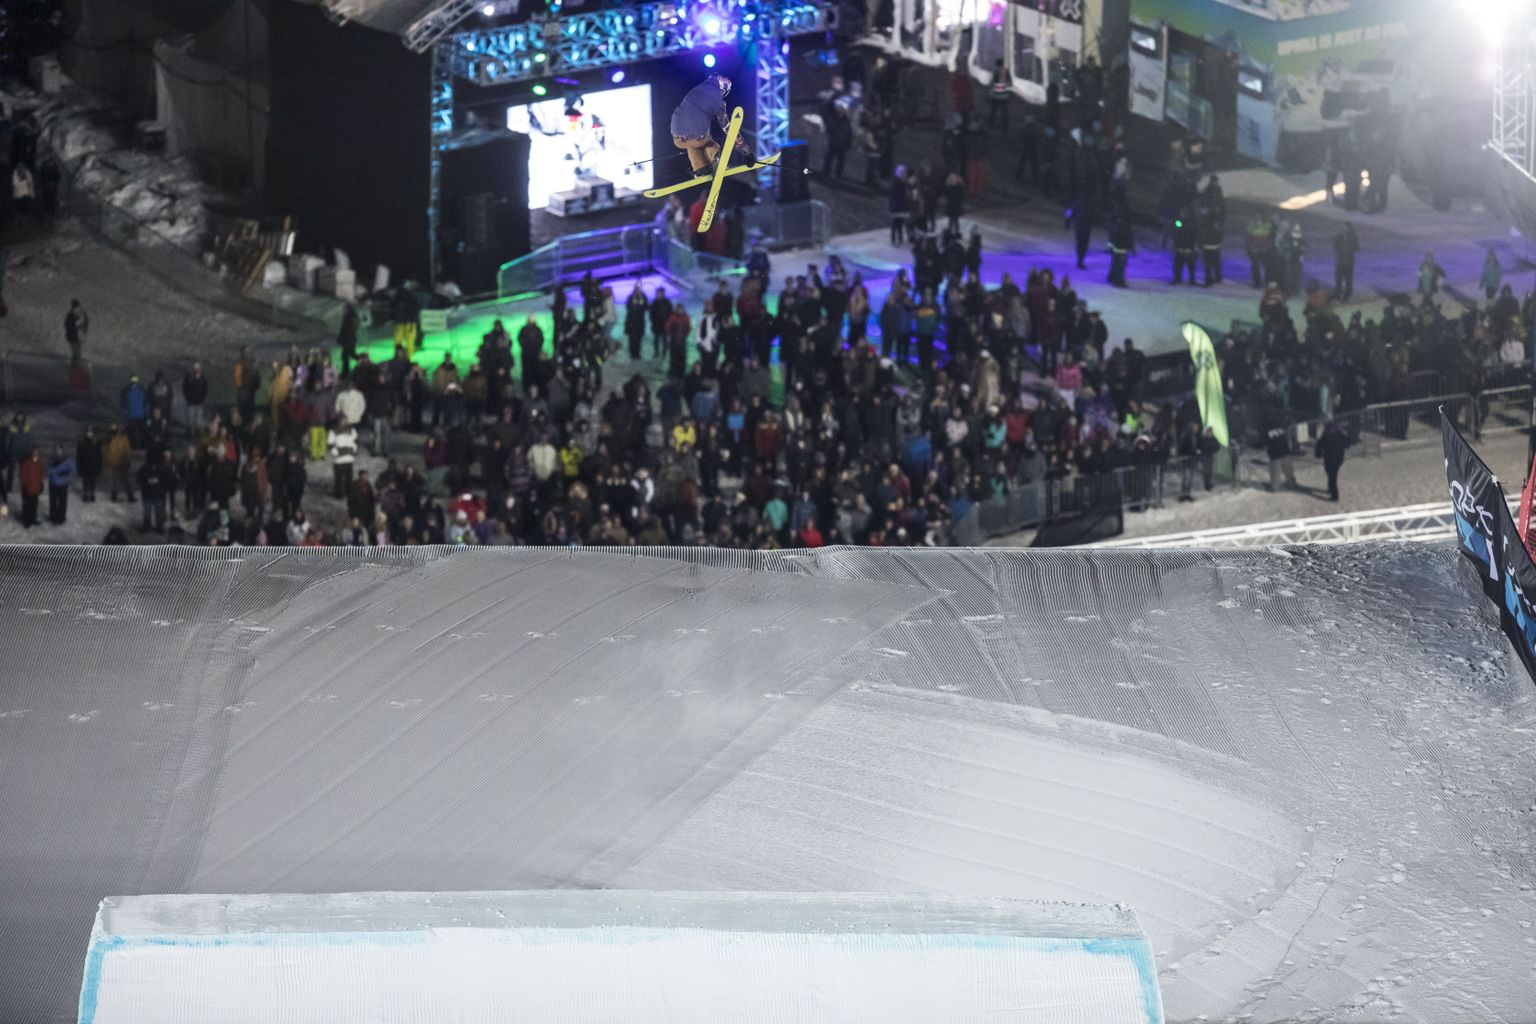 Kelly Sildarule kaks X-mängude hõbedat toonud toonud Big Air on Pyeongchangis kavas vaid lumelauaalana. Õnnestumise korral peaksid Pekingis peaksid starti pääsema ka suusatajad.